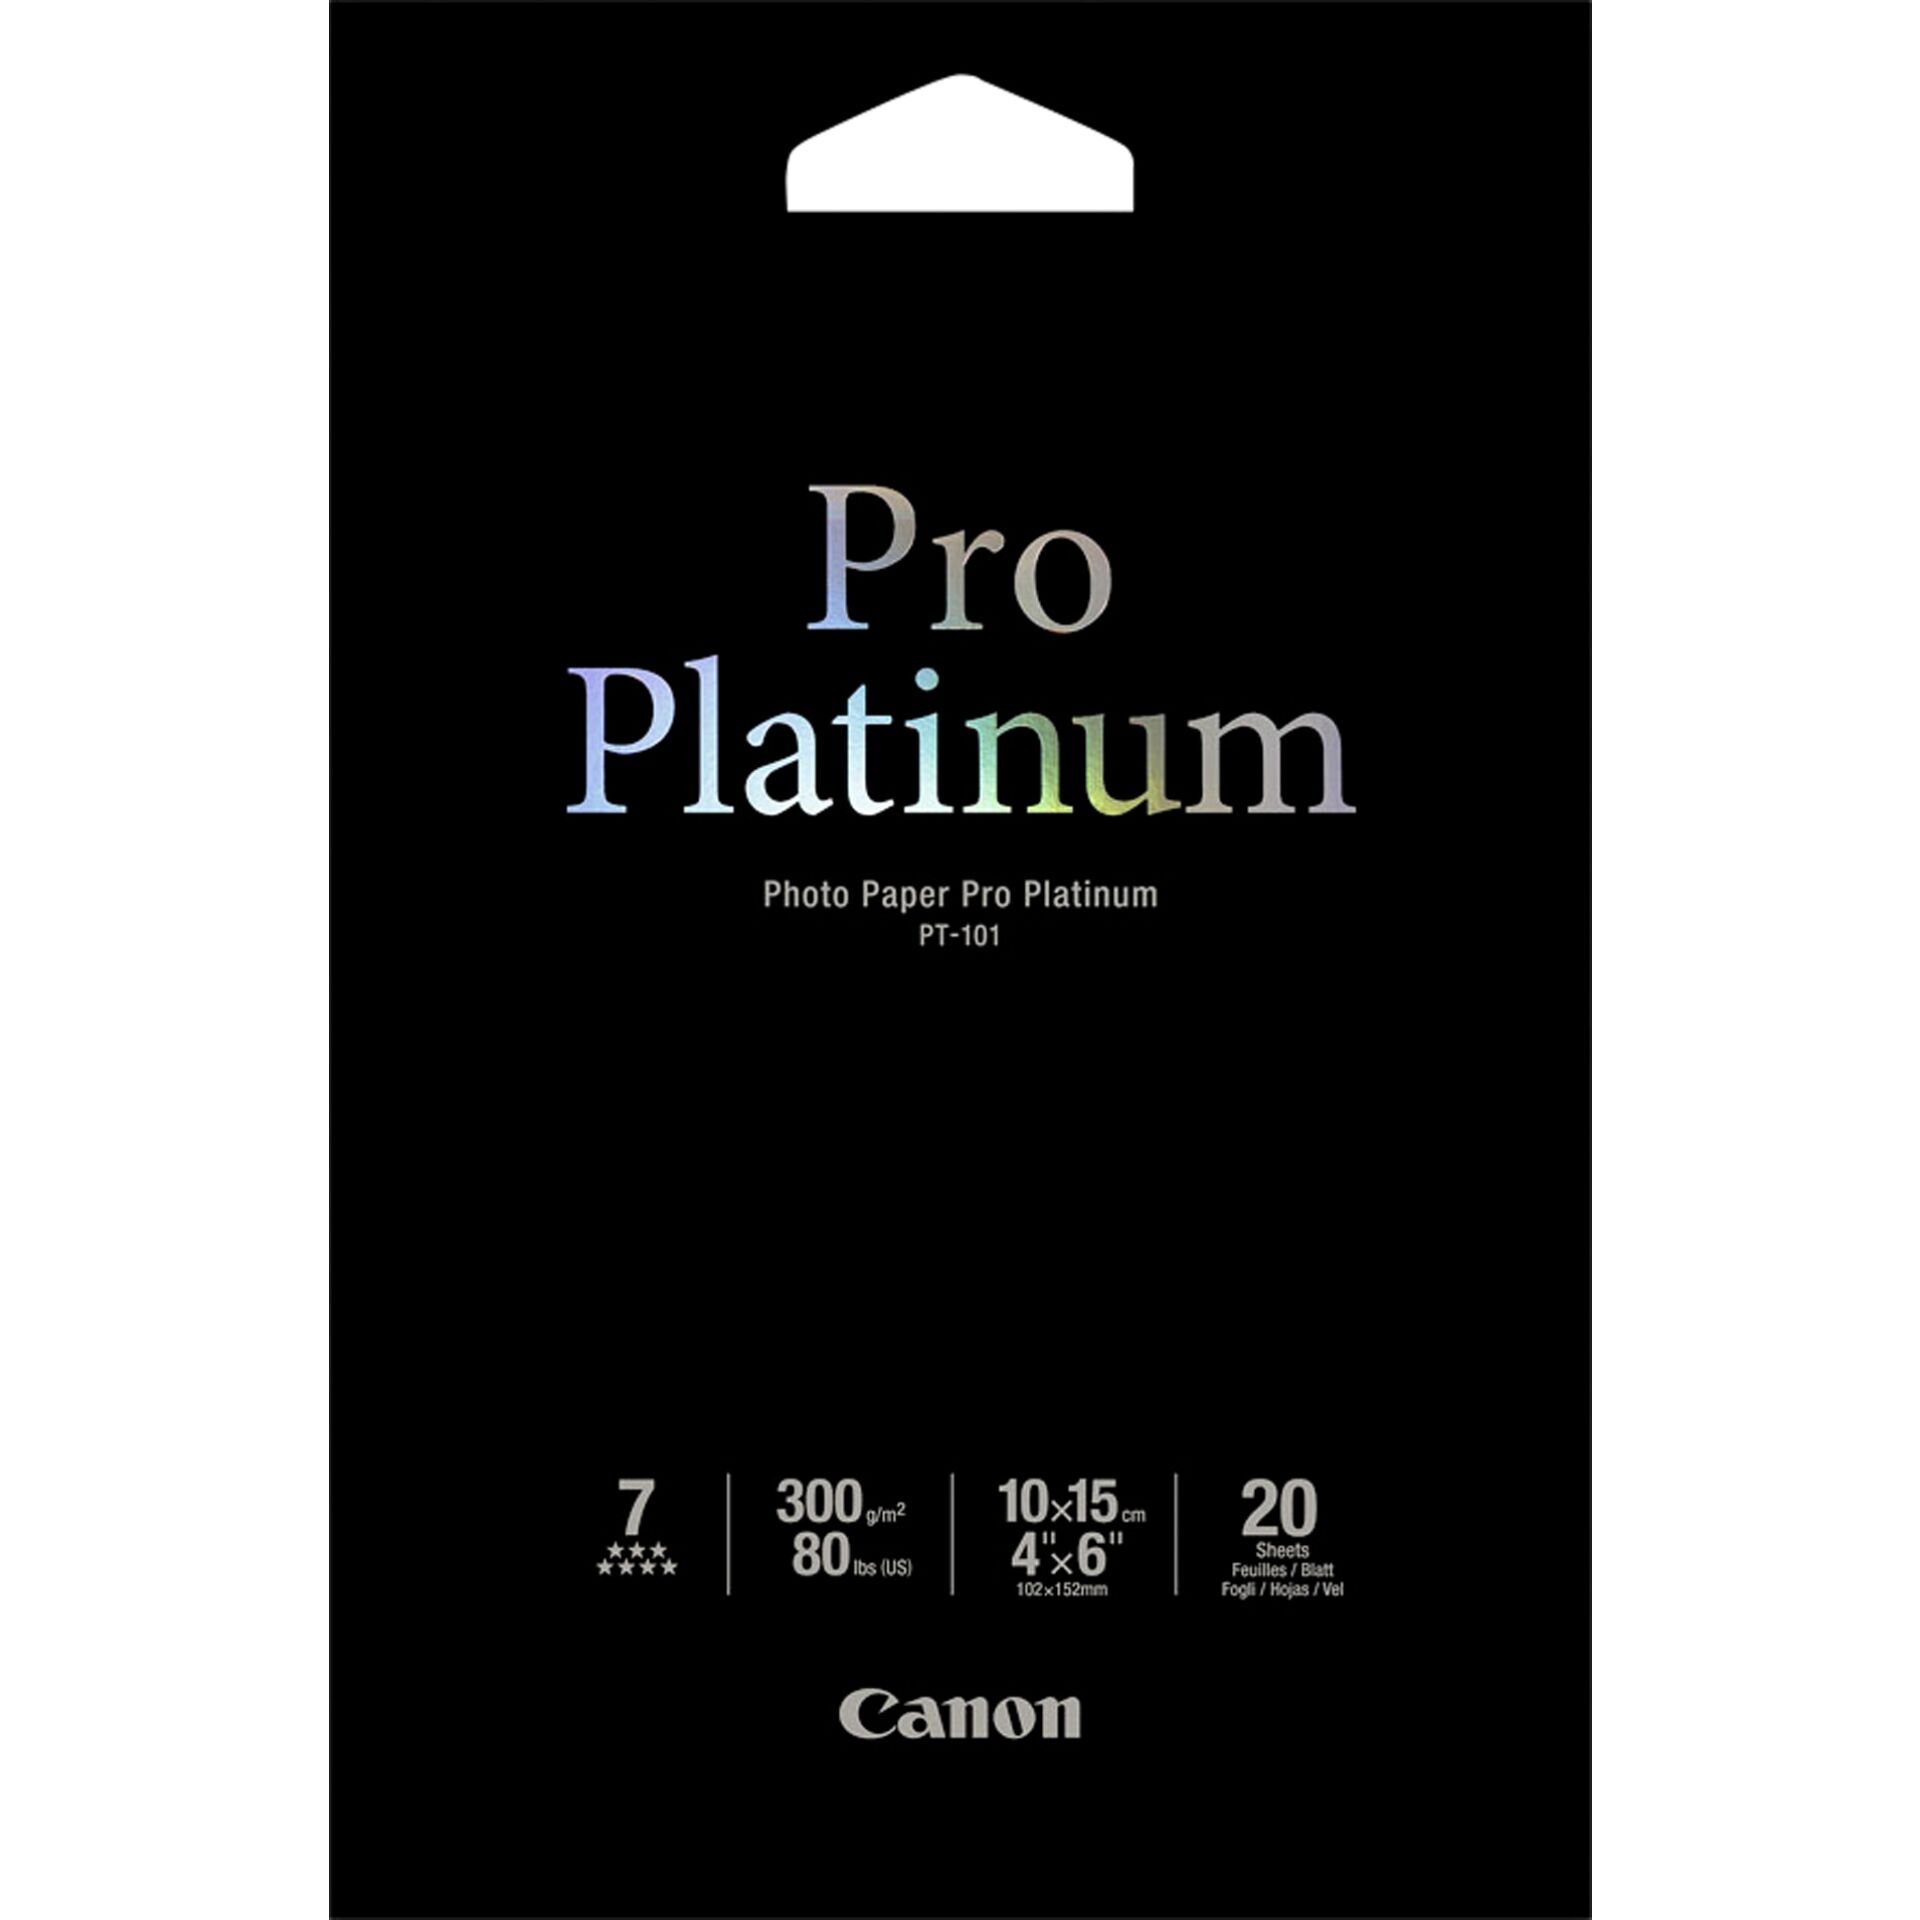 Canon PT-101 10x15 cm, 20 sheet Photo Paper Pro Platinum   3